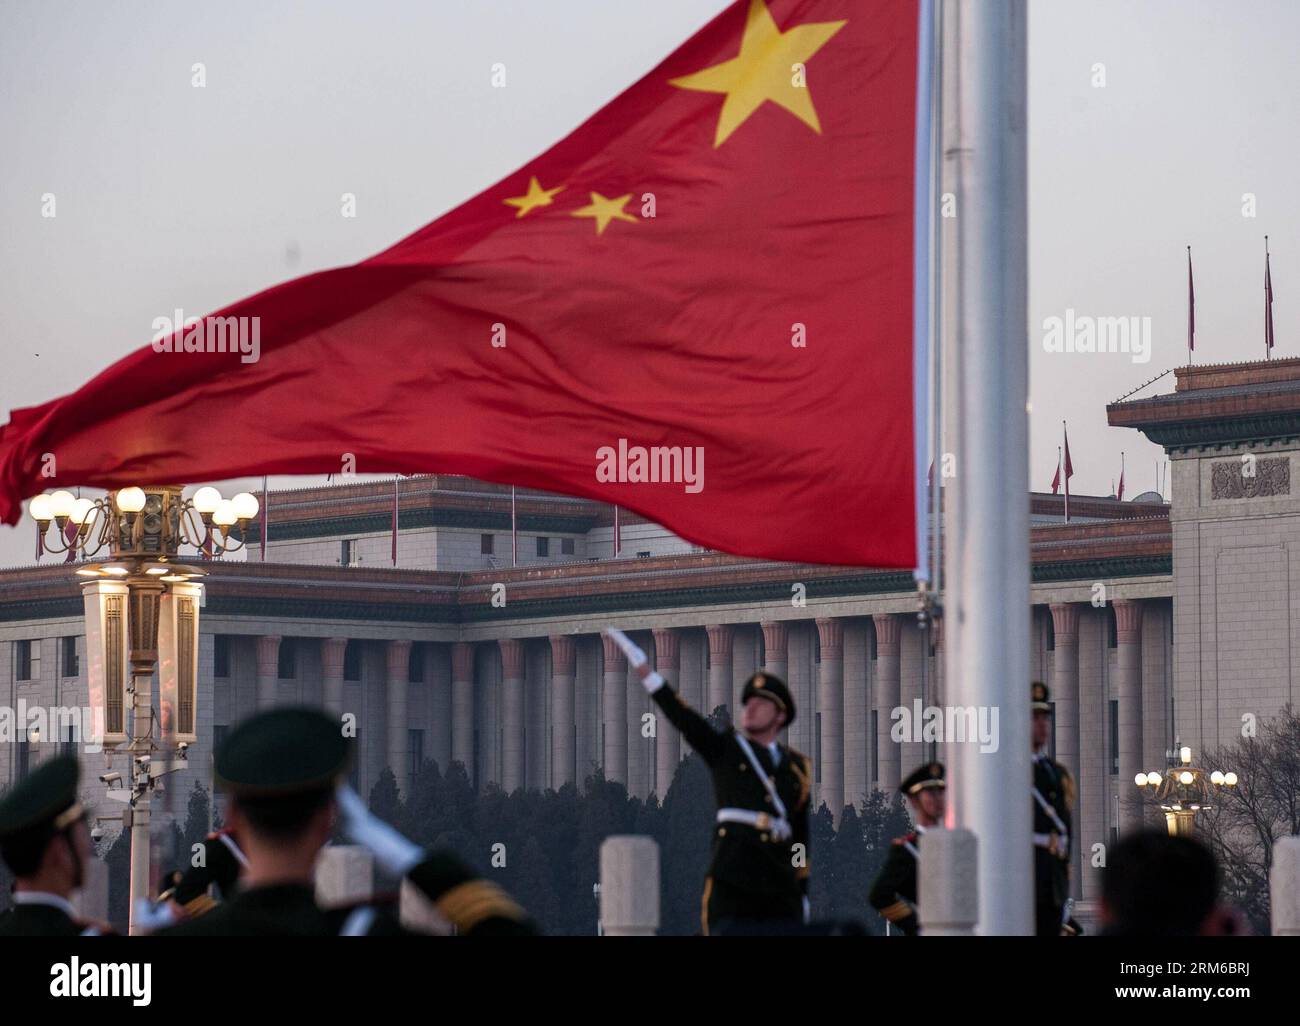 (140101) -- PECHINO, 1 gennaio 2014 (Xinhua) -- la bandiera nazionale cinese sorge nella piazza Tian anmen a Pechino, capitale della Cina, 1 gennaio 2014. Quasi 20.000 persone si sono riunite in Piazza Tian Anmen e hanno assistito alla cerimonia di innalzamento della bandiera nazionale il primo giorno del nuovo anno. (Xinhua/Zhang Yu) (hdt) CINA-PECHINO-CAPODANNO- CERIMONIA DI INNALZAMENTO DELLA BANDIERA (CN) PUBLICATIONxNOTxINxCHN Pechino 1 gennaio 2014 la bandiera nazionale cinese di XINHUA sorge nella piazza Tian anmen a Pechino capitale cinese 1 gennaio 2014 parrocchiani 20 000 celebrità si sono riunite nella piazza Tian Anmen e hanno assistito alla bandiera nazionale Rais Foto Stock